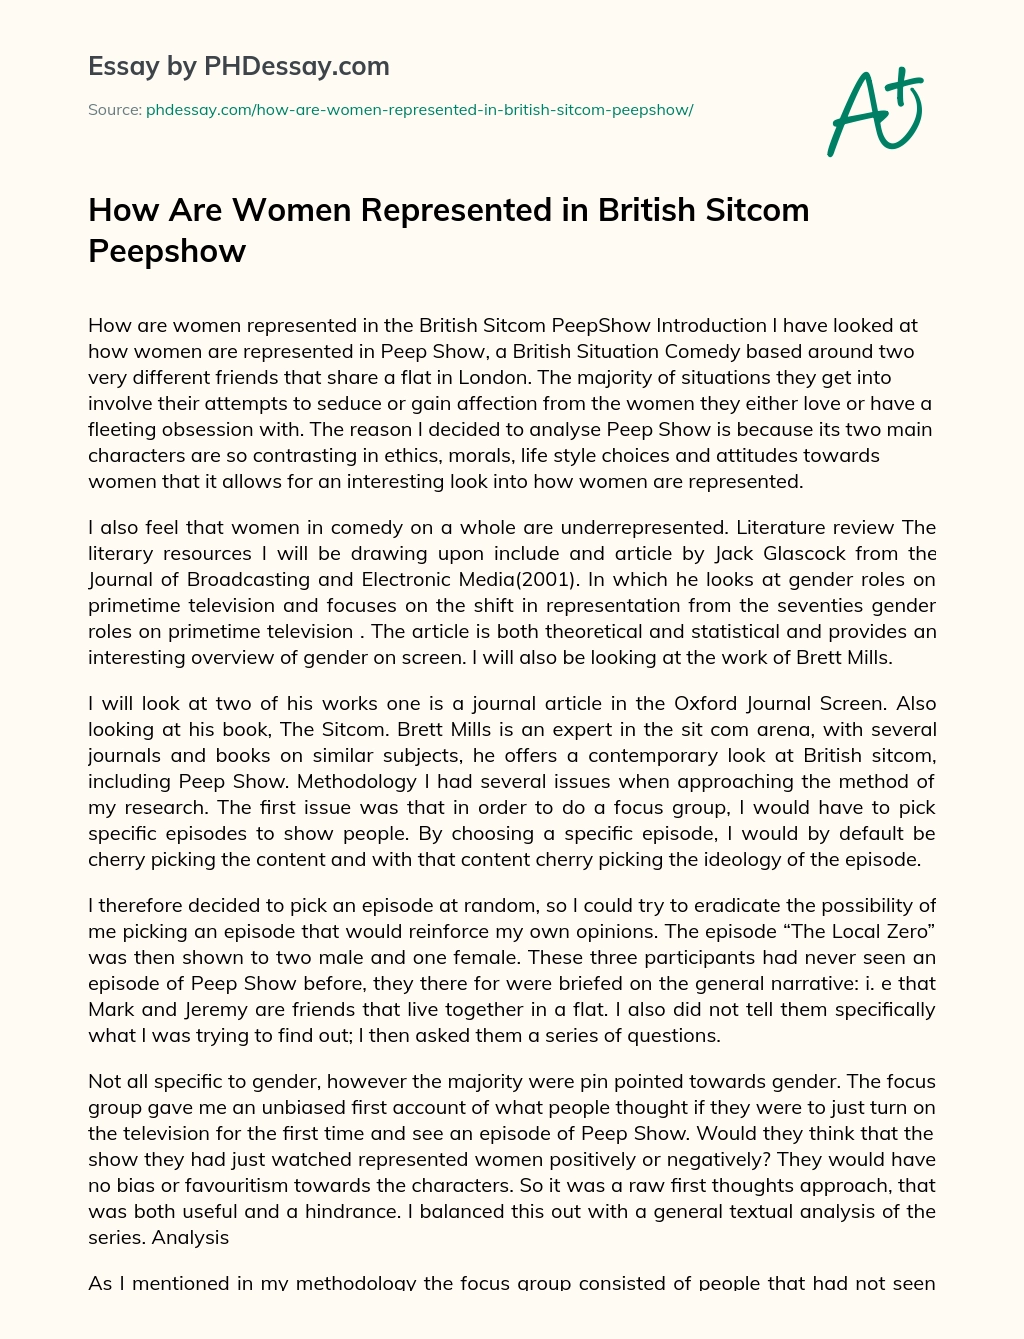 How Are Women Represented in British Sitcom Peepshow essay